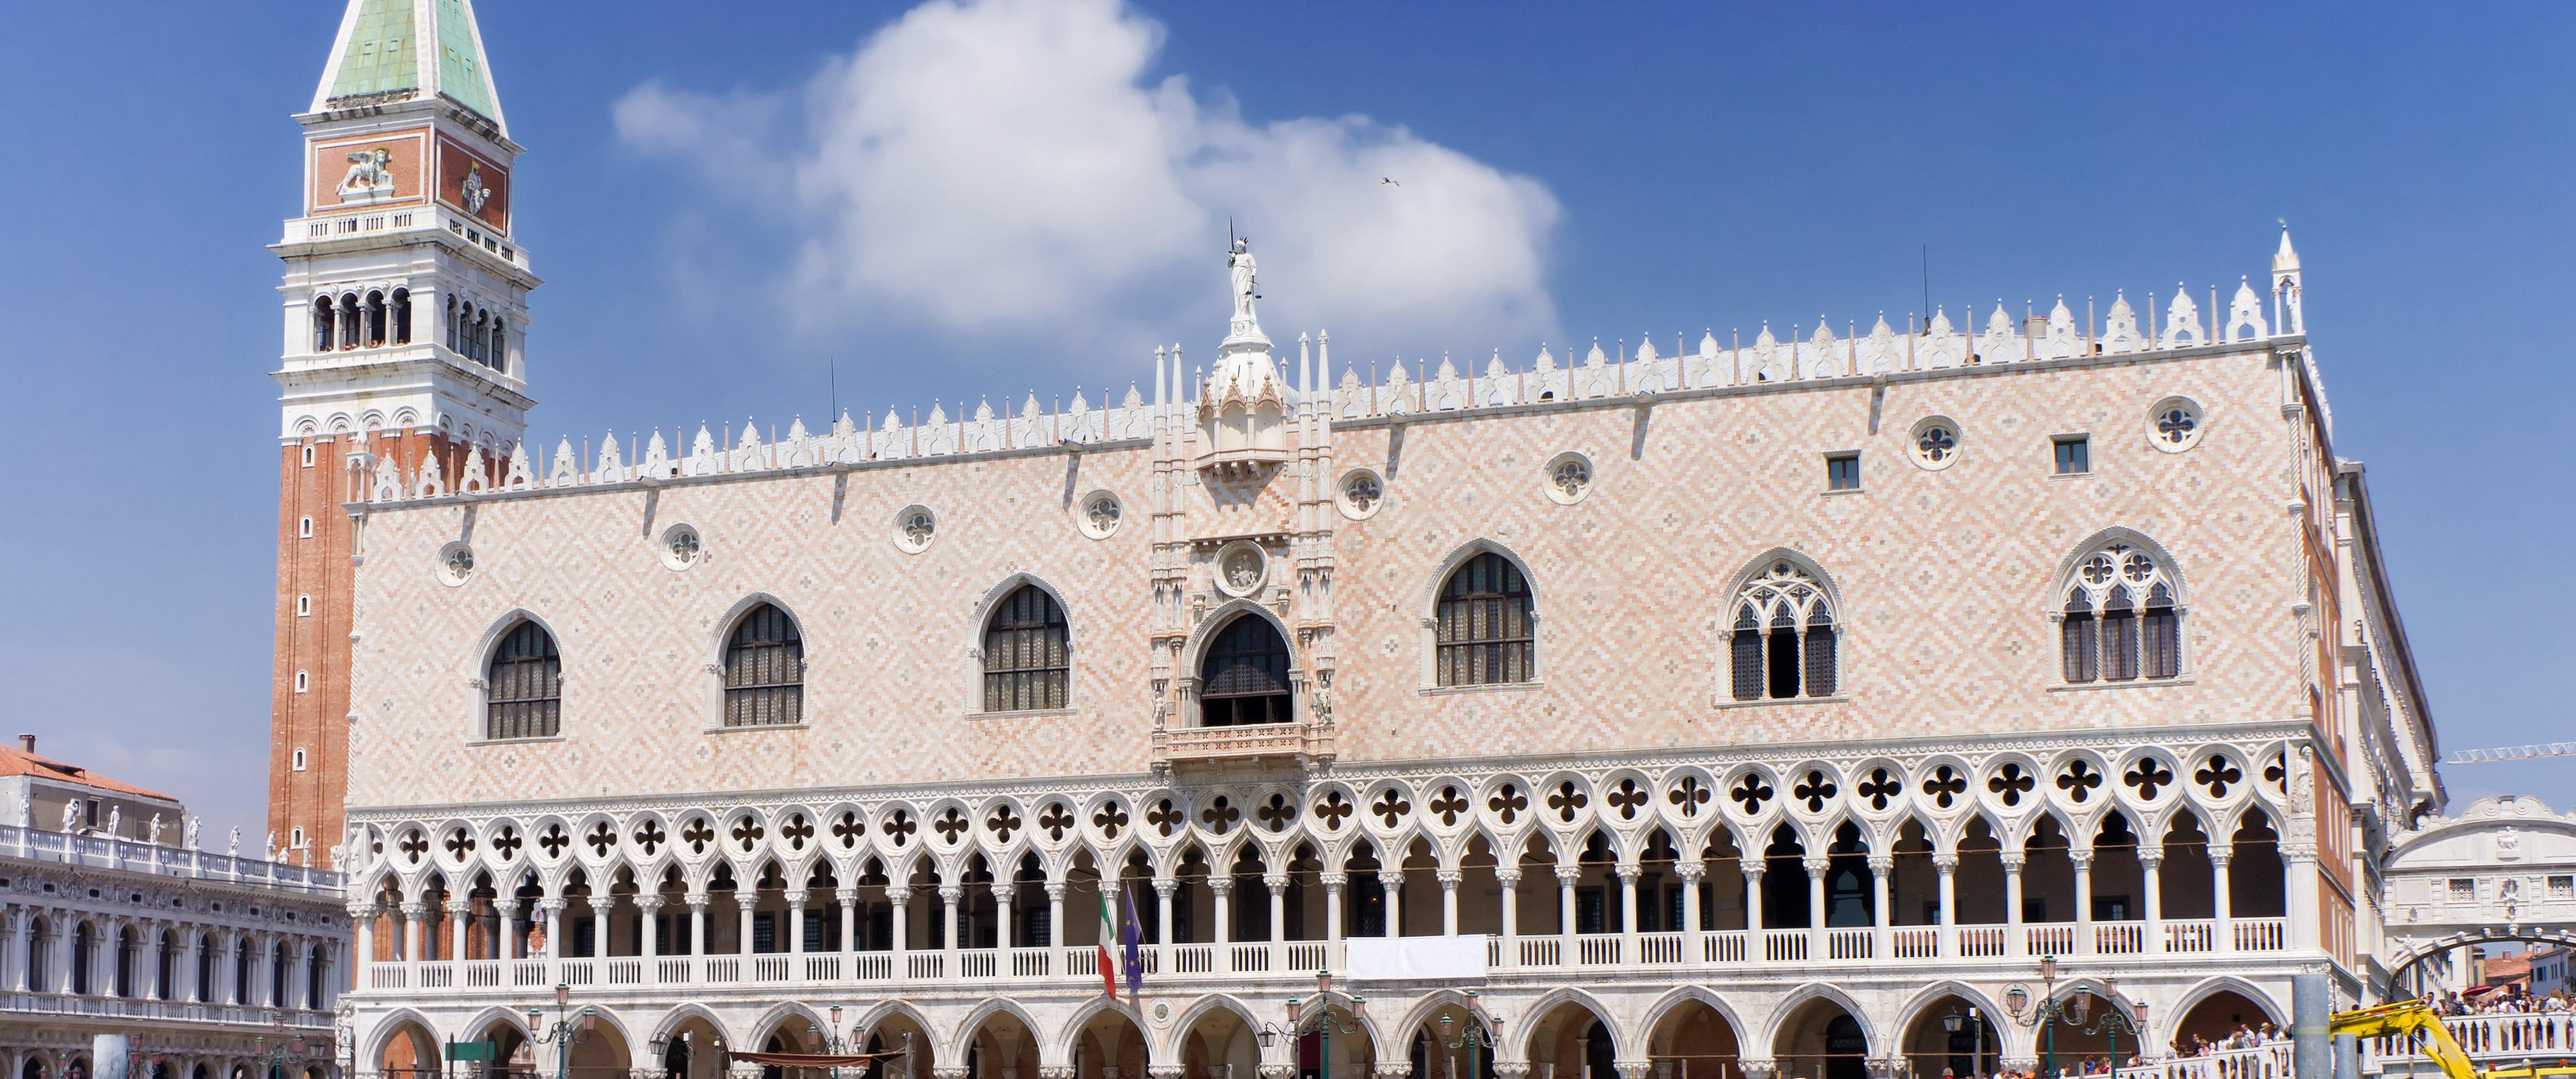 Visite audio-guidée de la Place Saint-Marc à Venise: Billet coupe-file pour le Palais des Doges inclus!